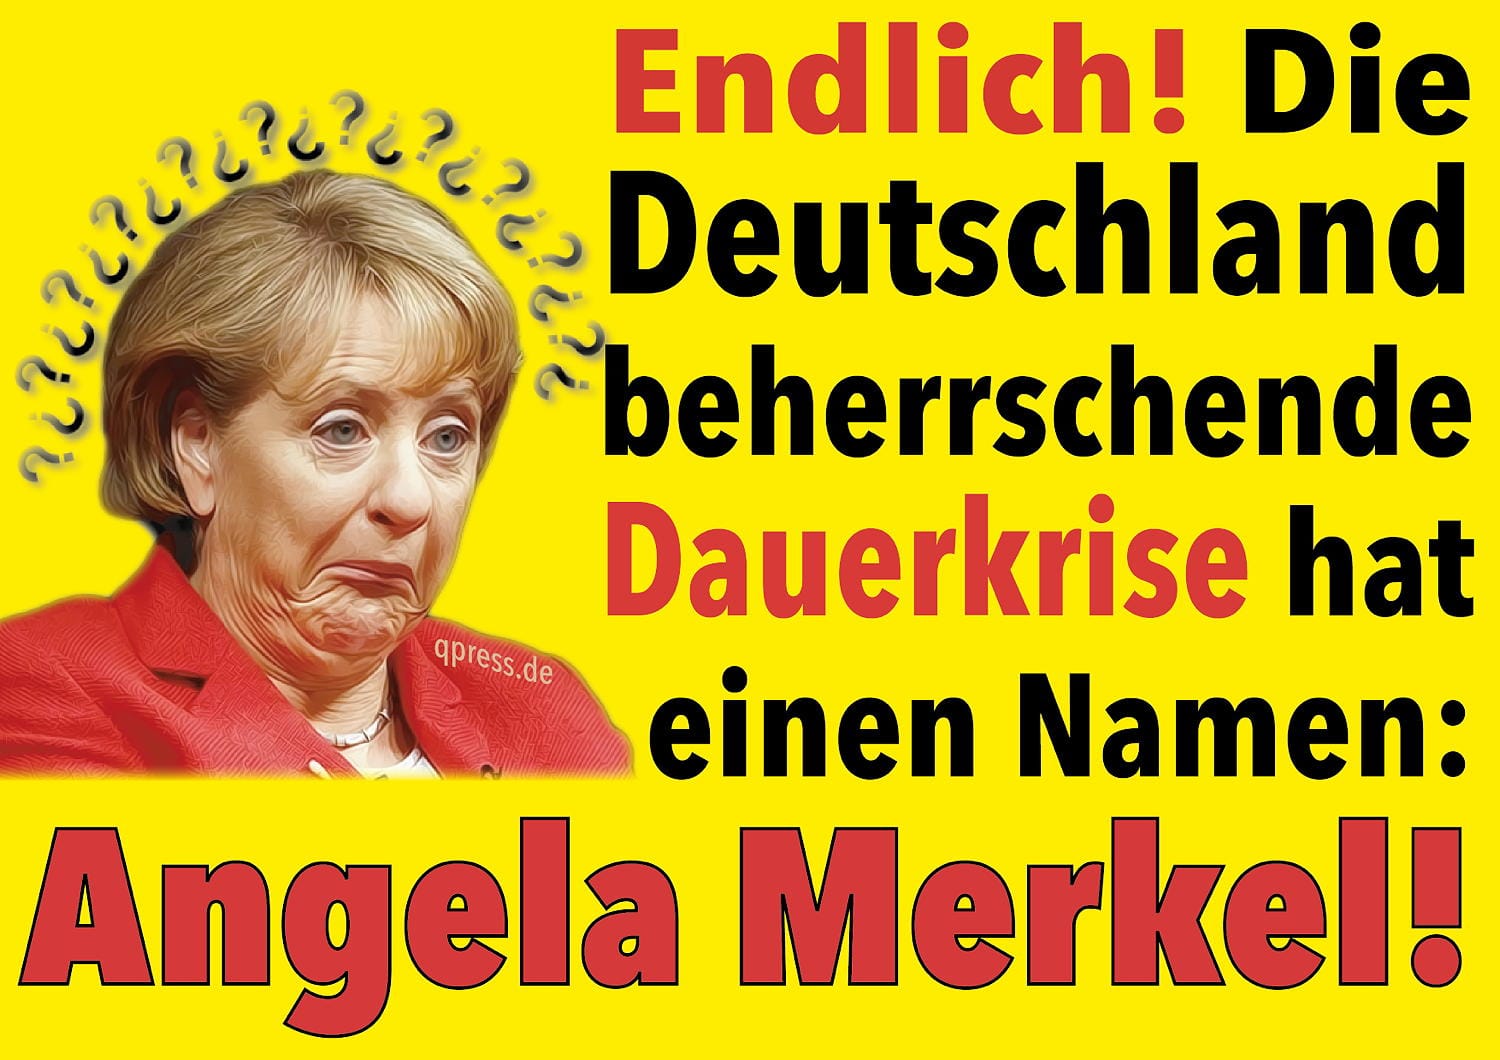 Endlich_Die_in_Deutschland_herrschende_Dauerkrise_hat_einen_Namen_Angela_Merkel-01